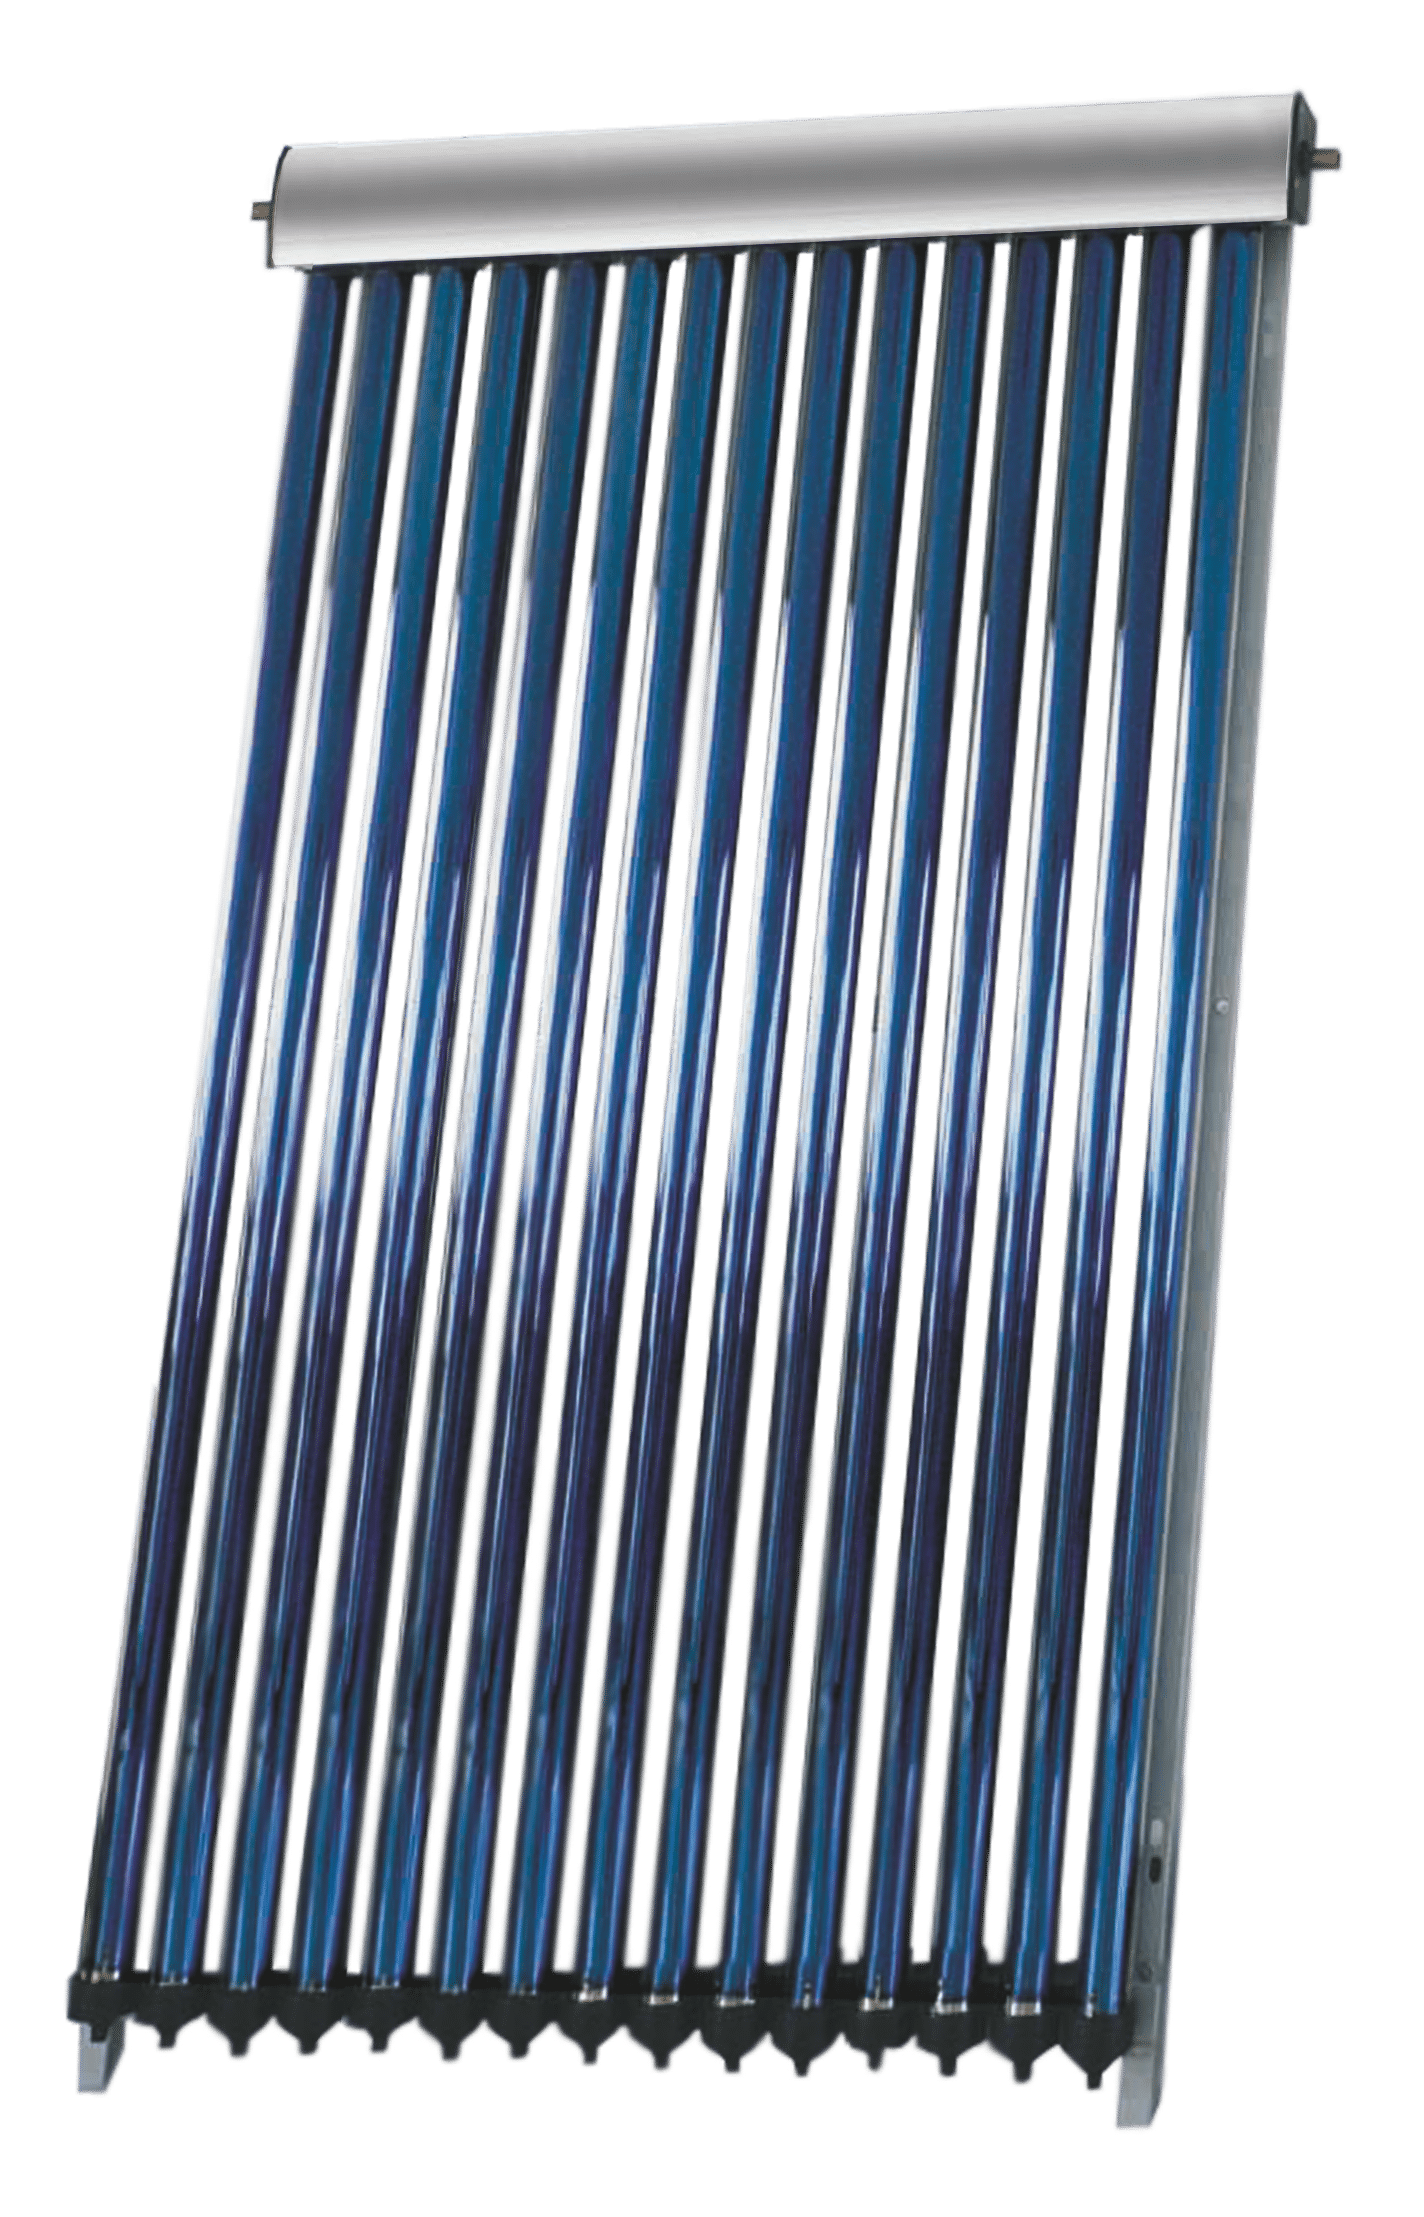 Panou colector solar presurizat cu tuburi vidate Heat Pipe Fornello 15 tuburi, destinat producerii de apa calda menajera, montaj pe acoperis inclinat sau fatada